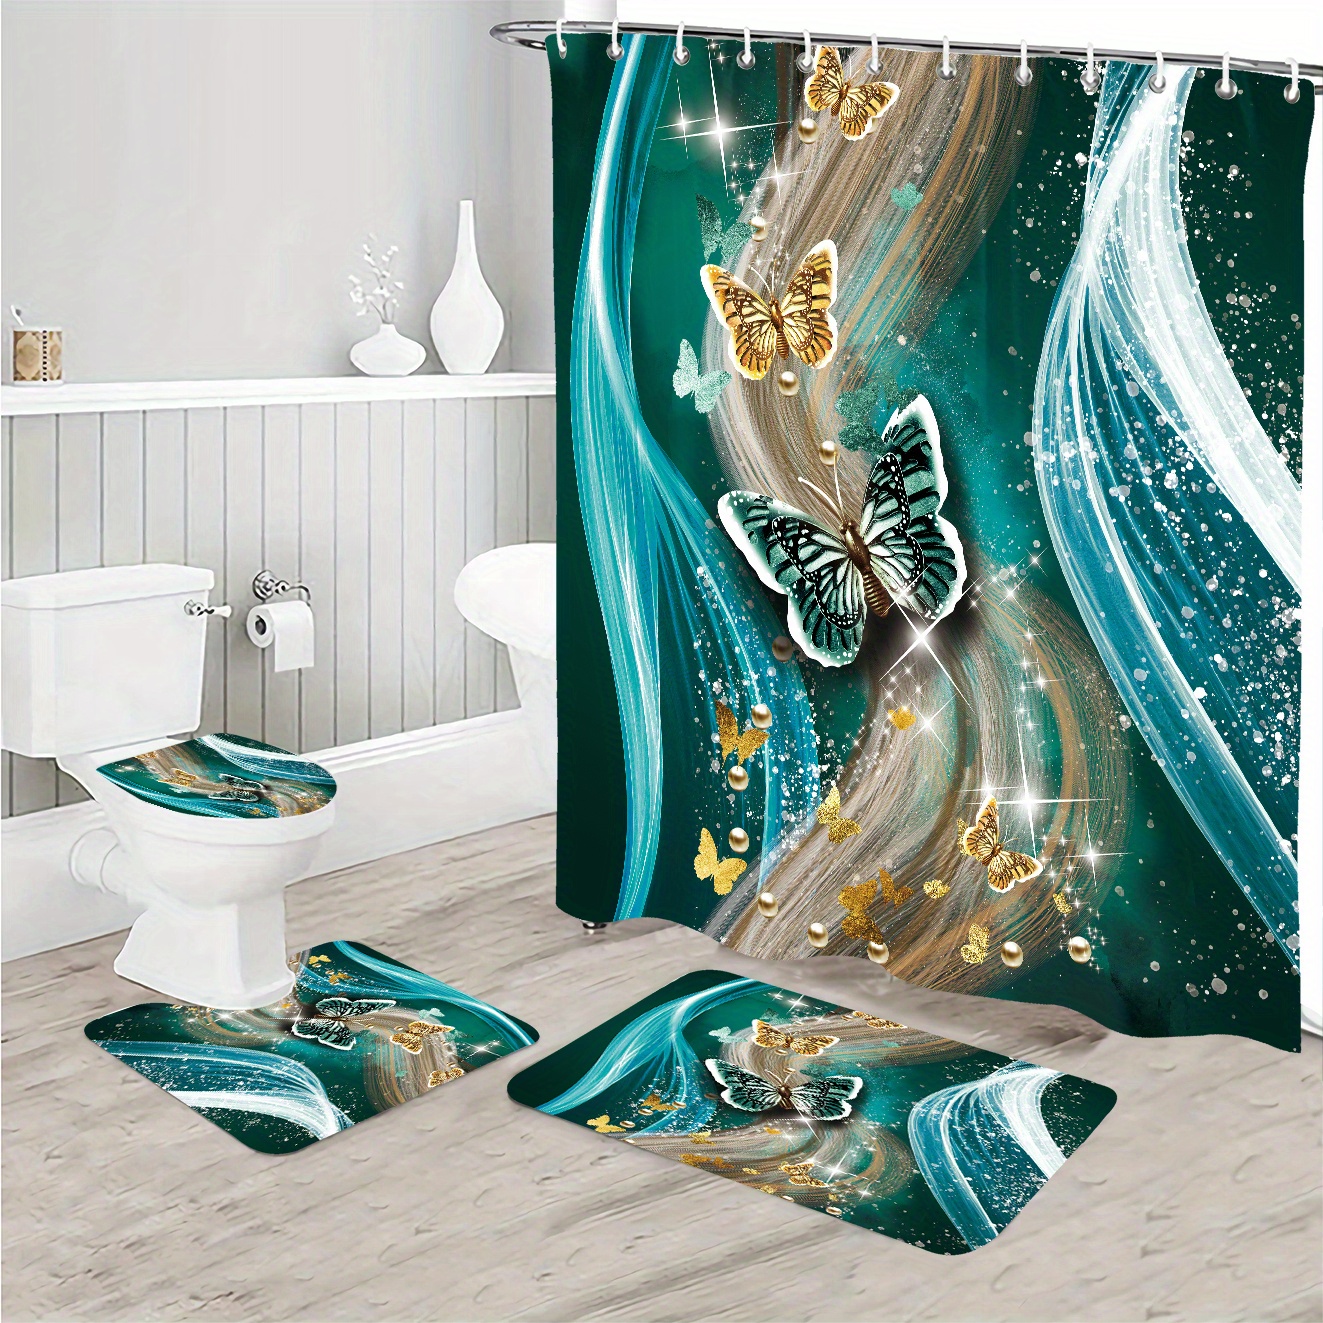 3D Romantic Love Heart Shower Curtain Bath Mat Toilet Lid Cover